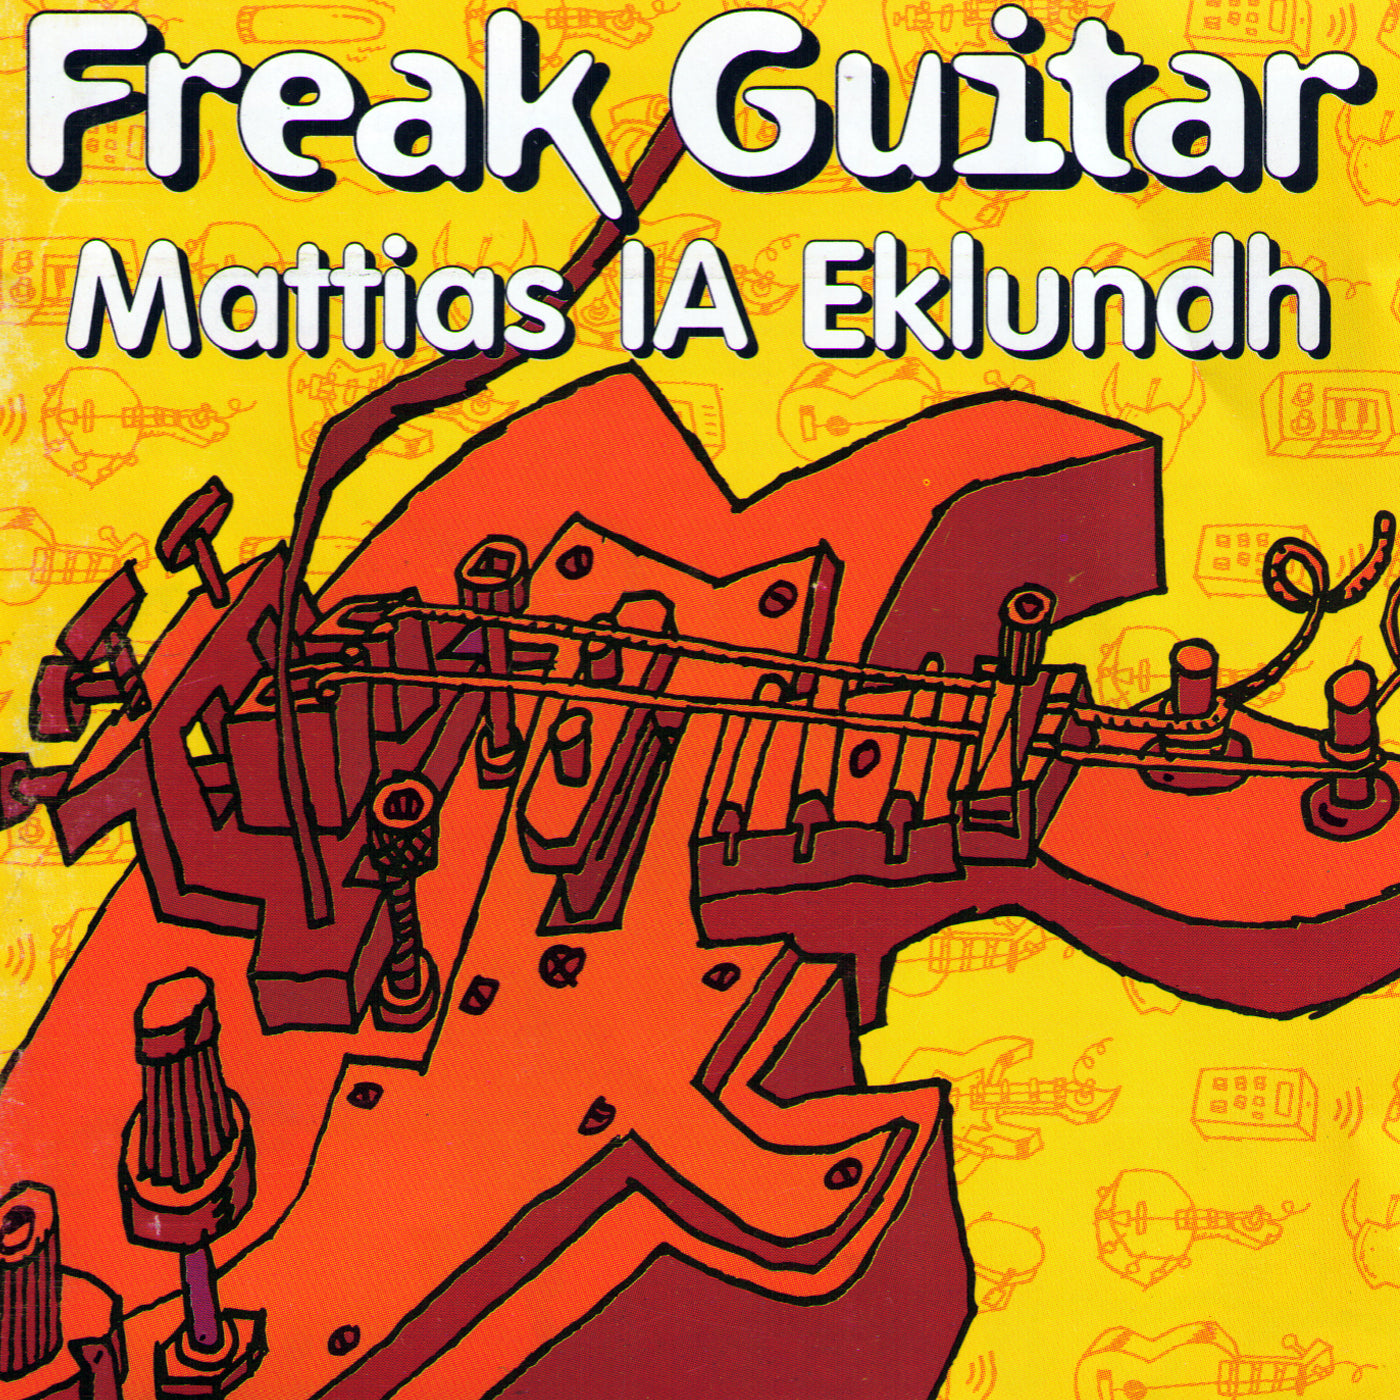 Freak Guitar - CD